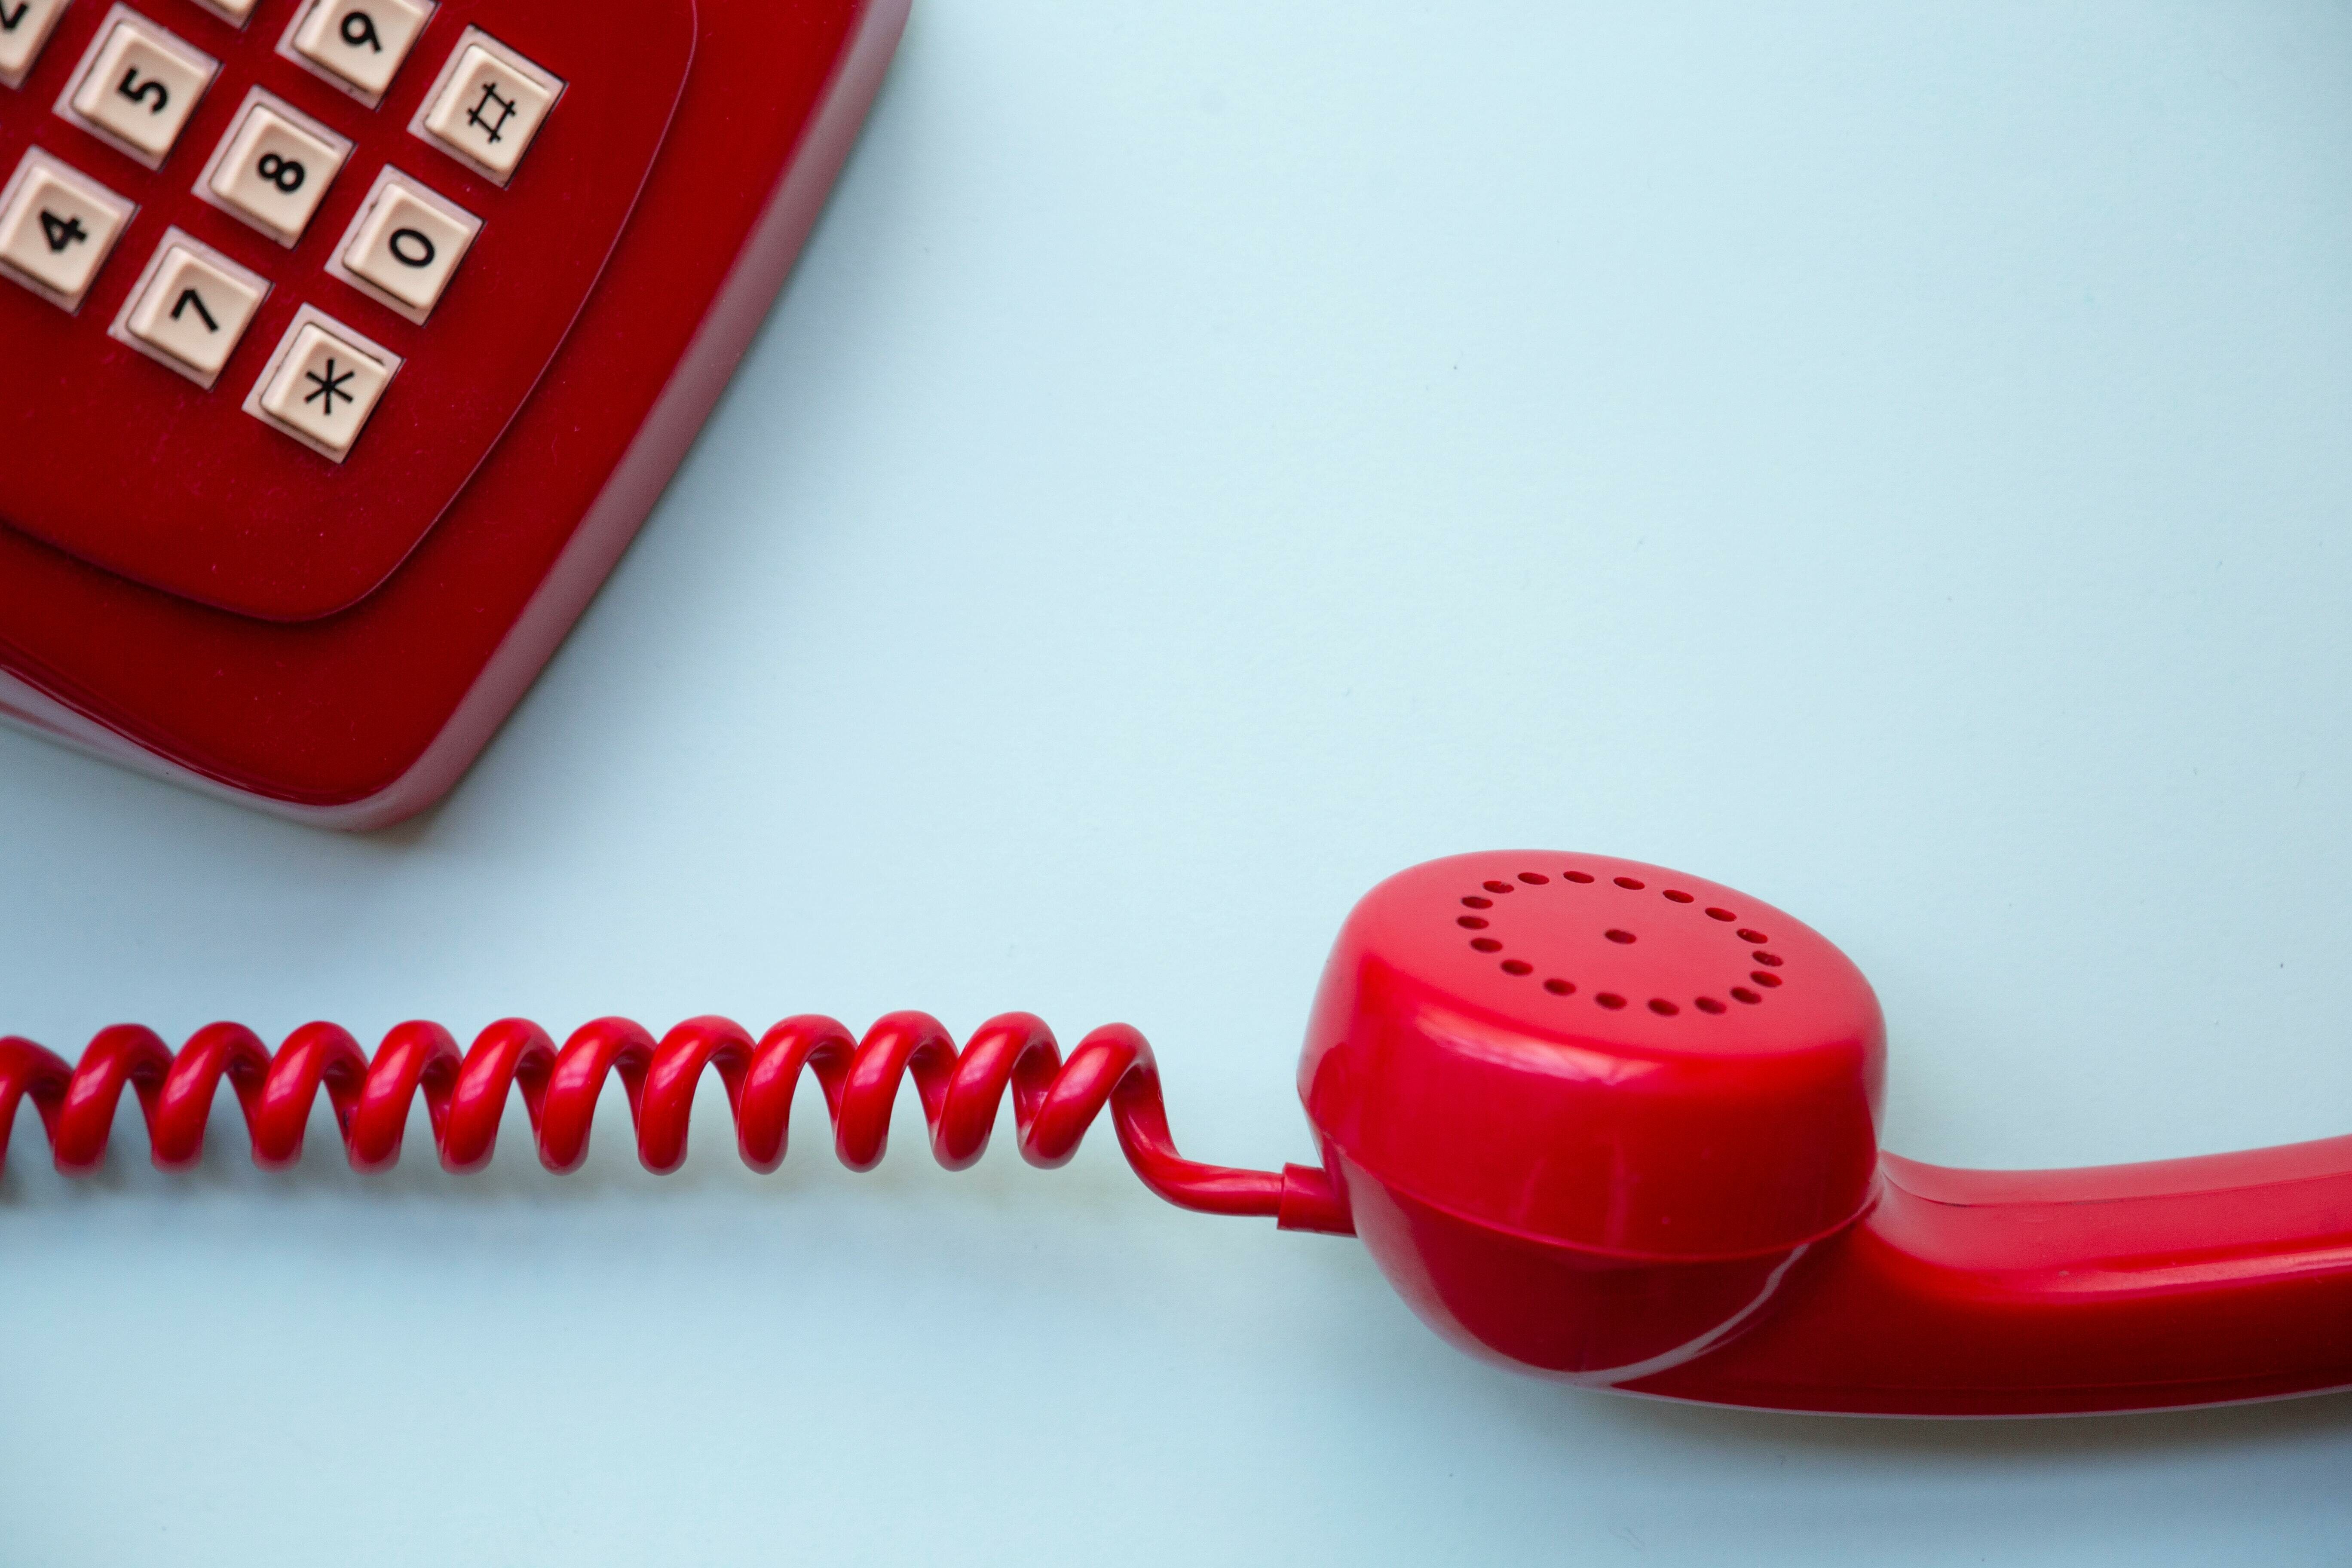 Ein rotes Telefon mit abgehobenem Hörer auf hellblauem Hintergrund.